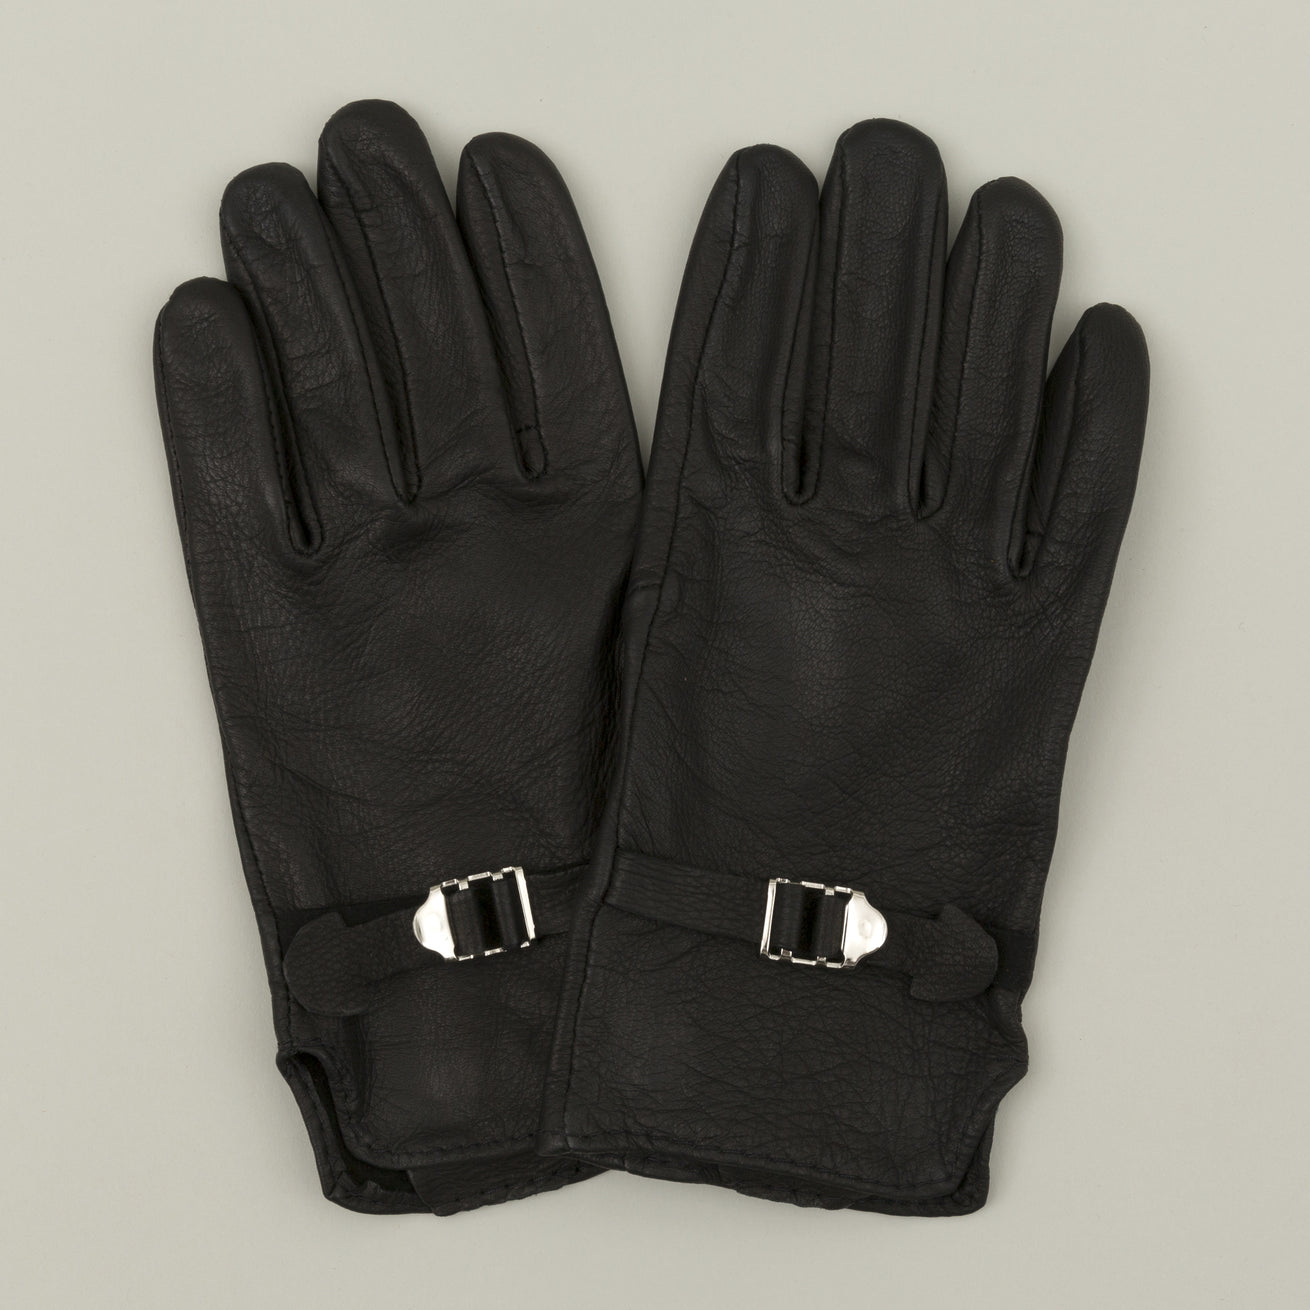 Deerskin Strap Gloves, Black - The Stronghold